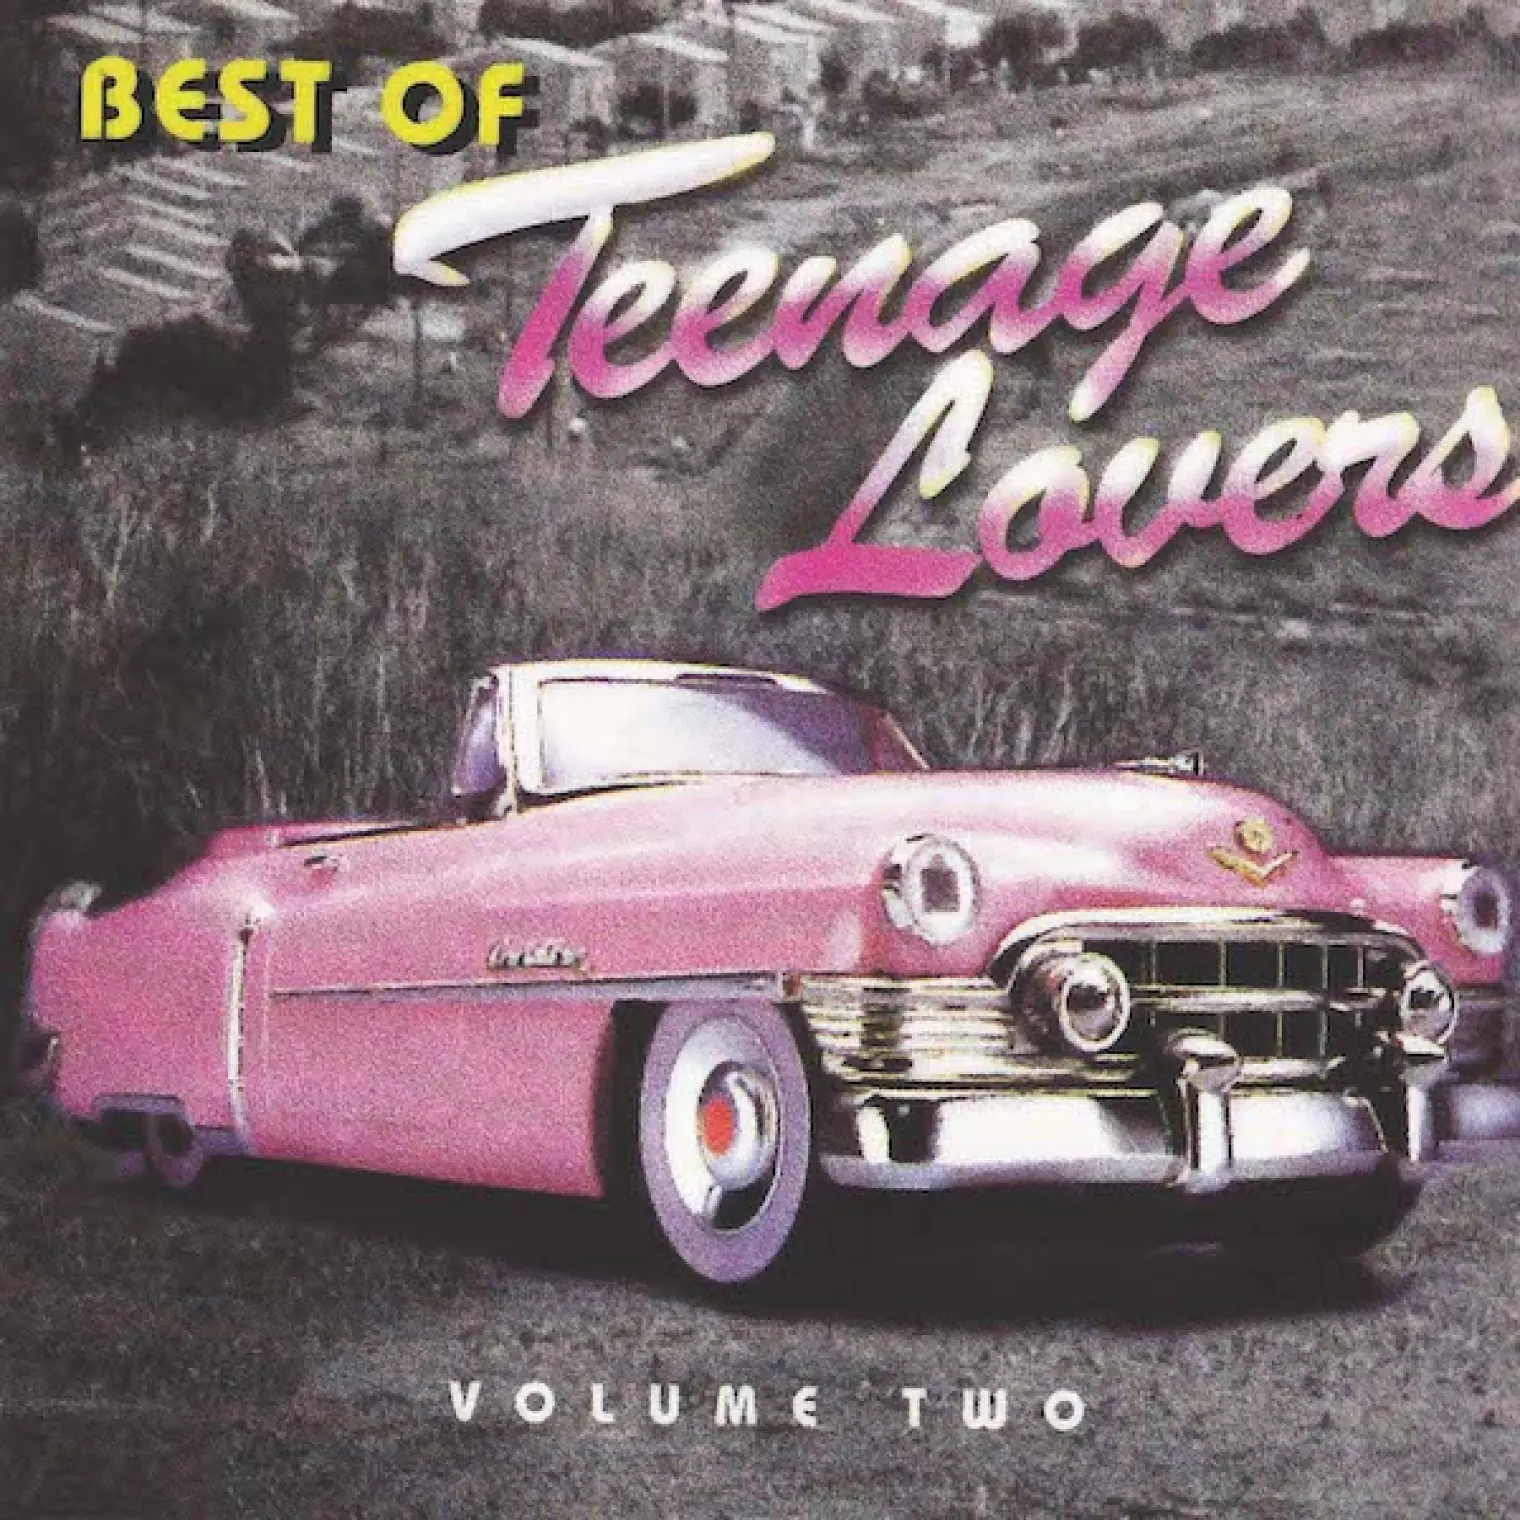 The Best Of Vol 2 -  Teenage Lovers 